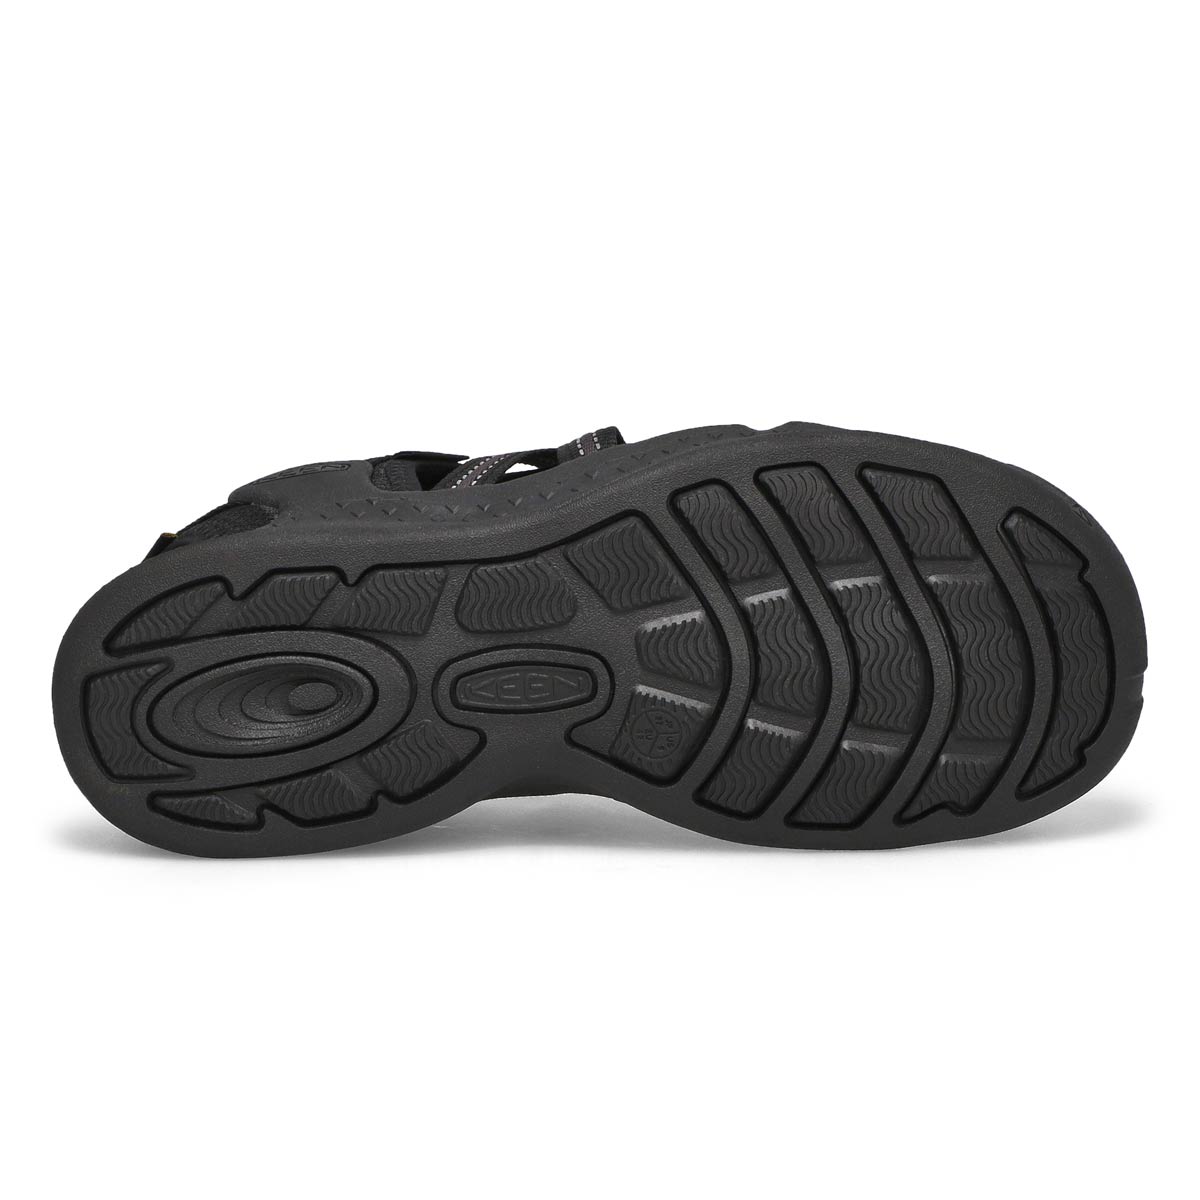 Men's Drift Creek H2 Sport Sandal - Black/Black